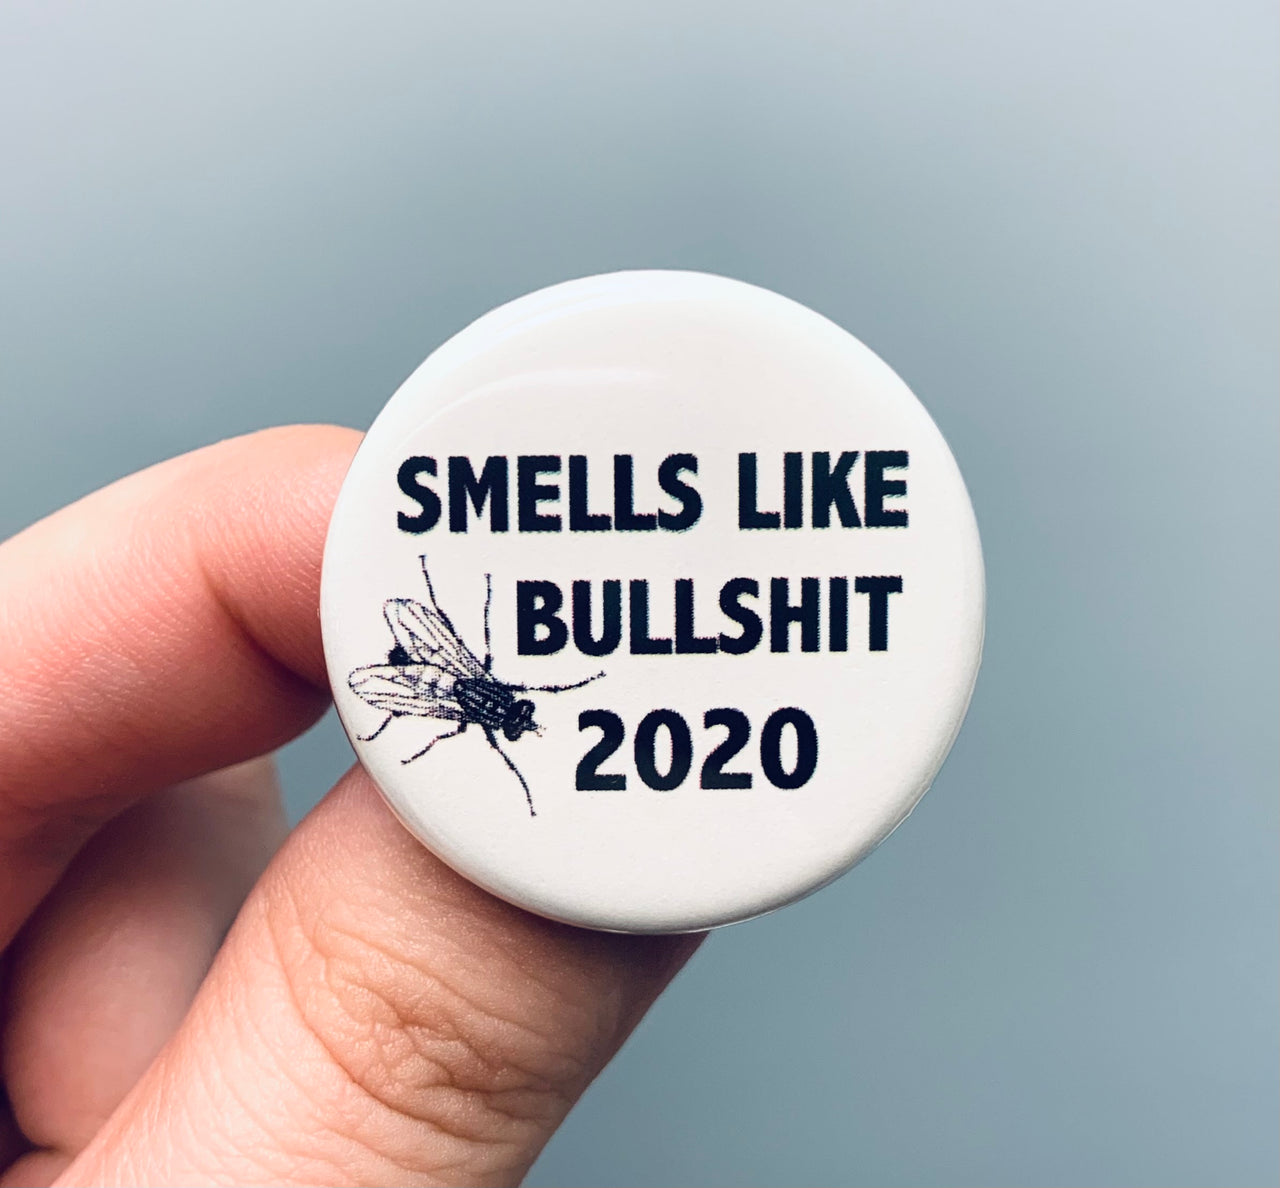 Smells like bullshit 2020